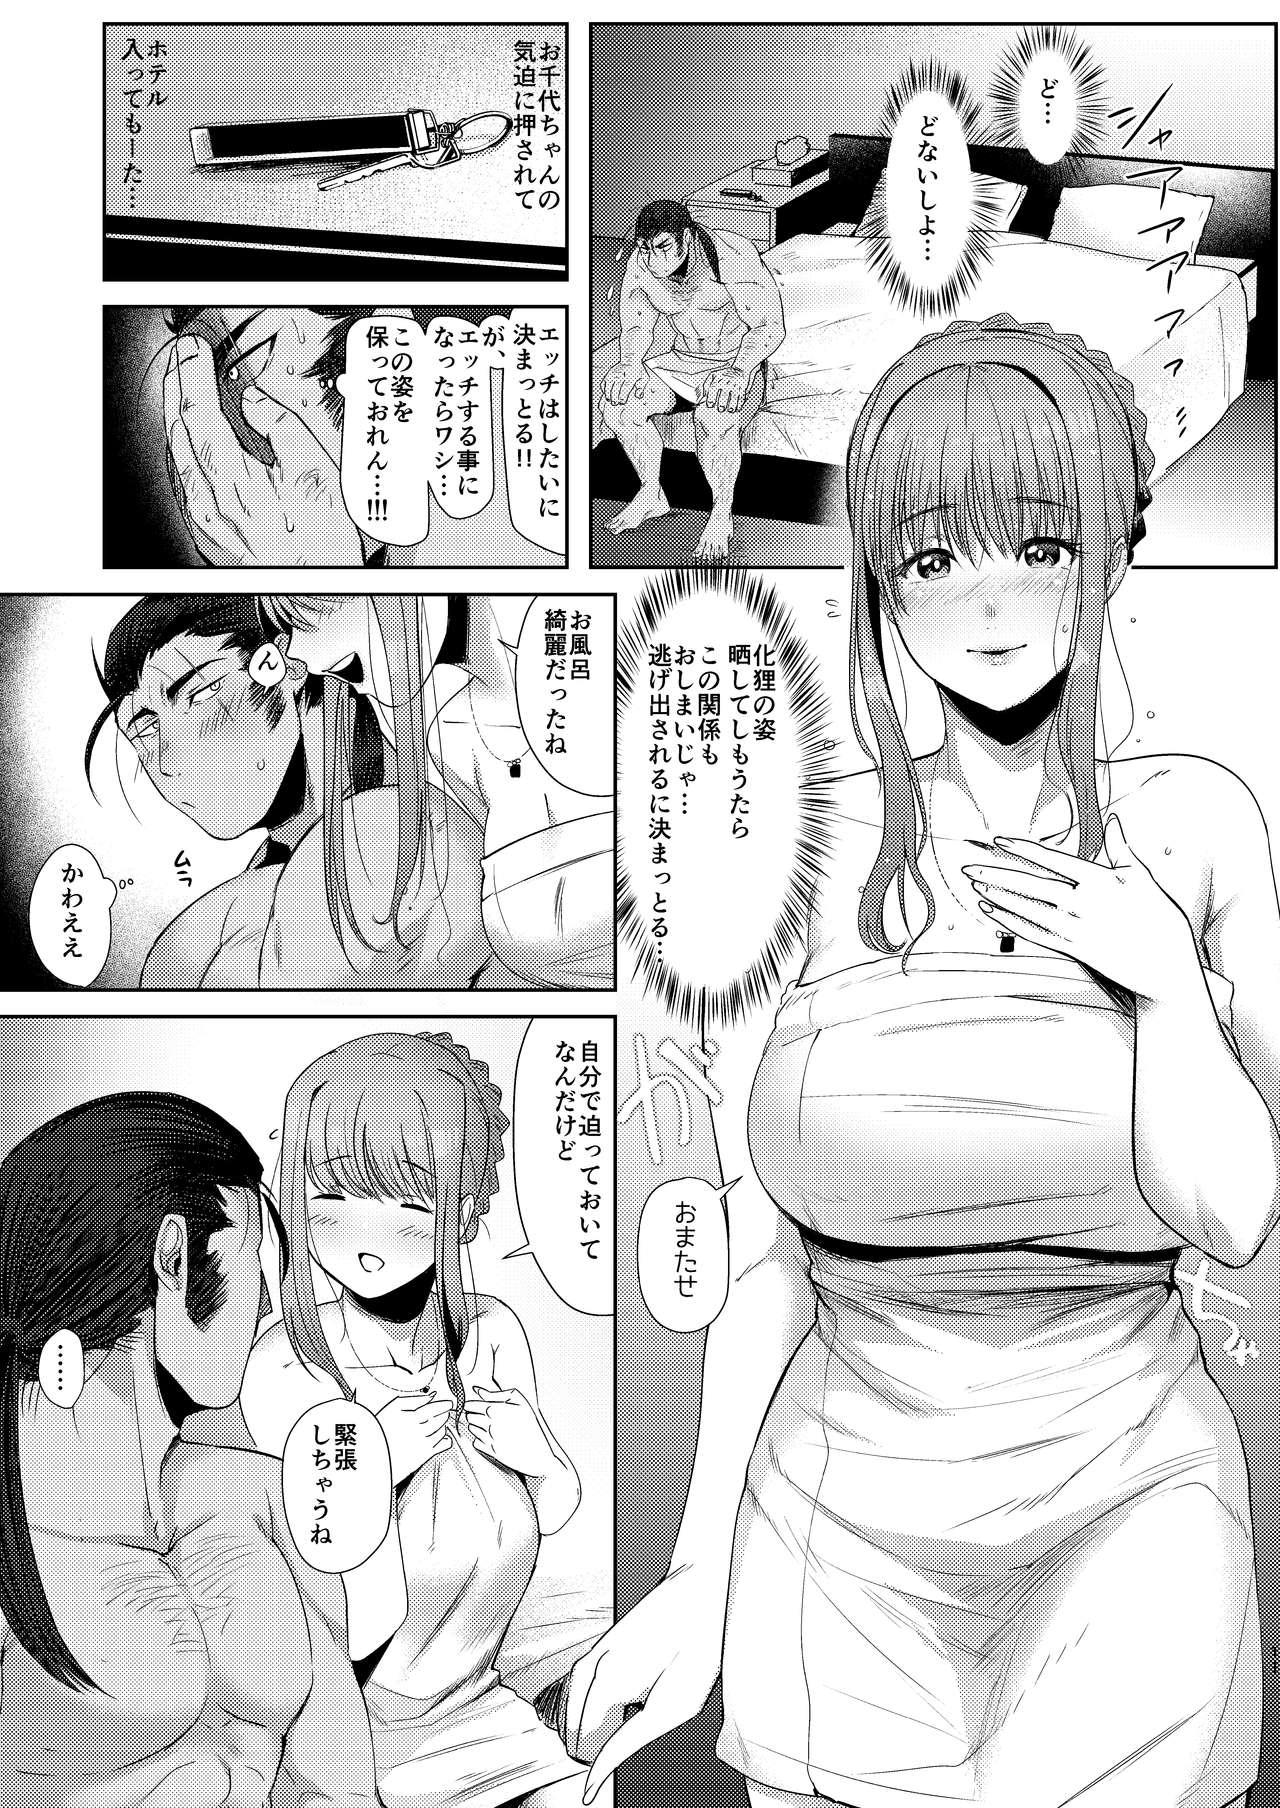 Throatfuck Tanuki no Koibito - Original 18yo - Page 11